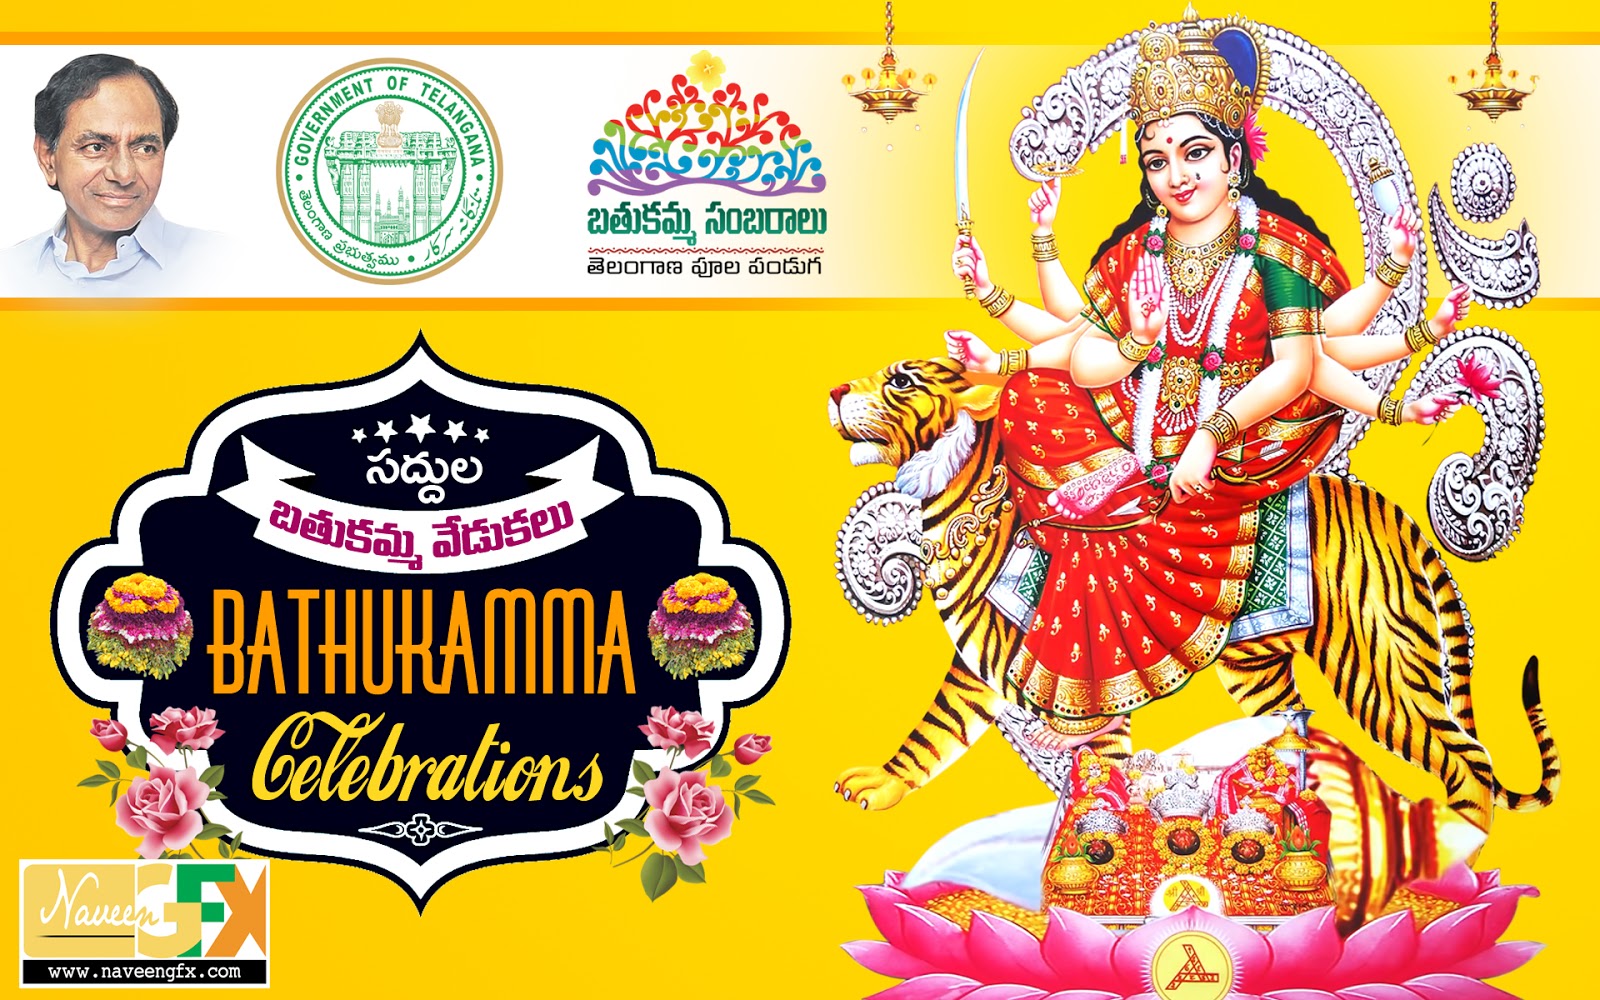 saddula bathukamma celebrations telugu posters and quotes | naveengfx